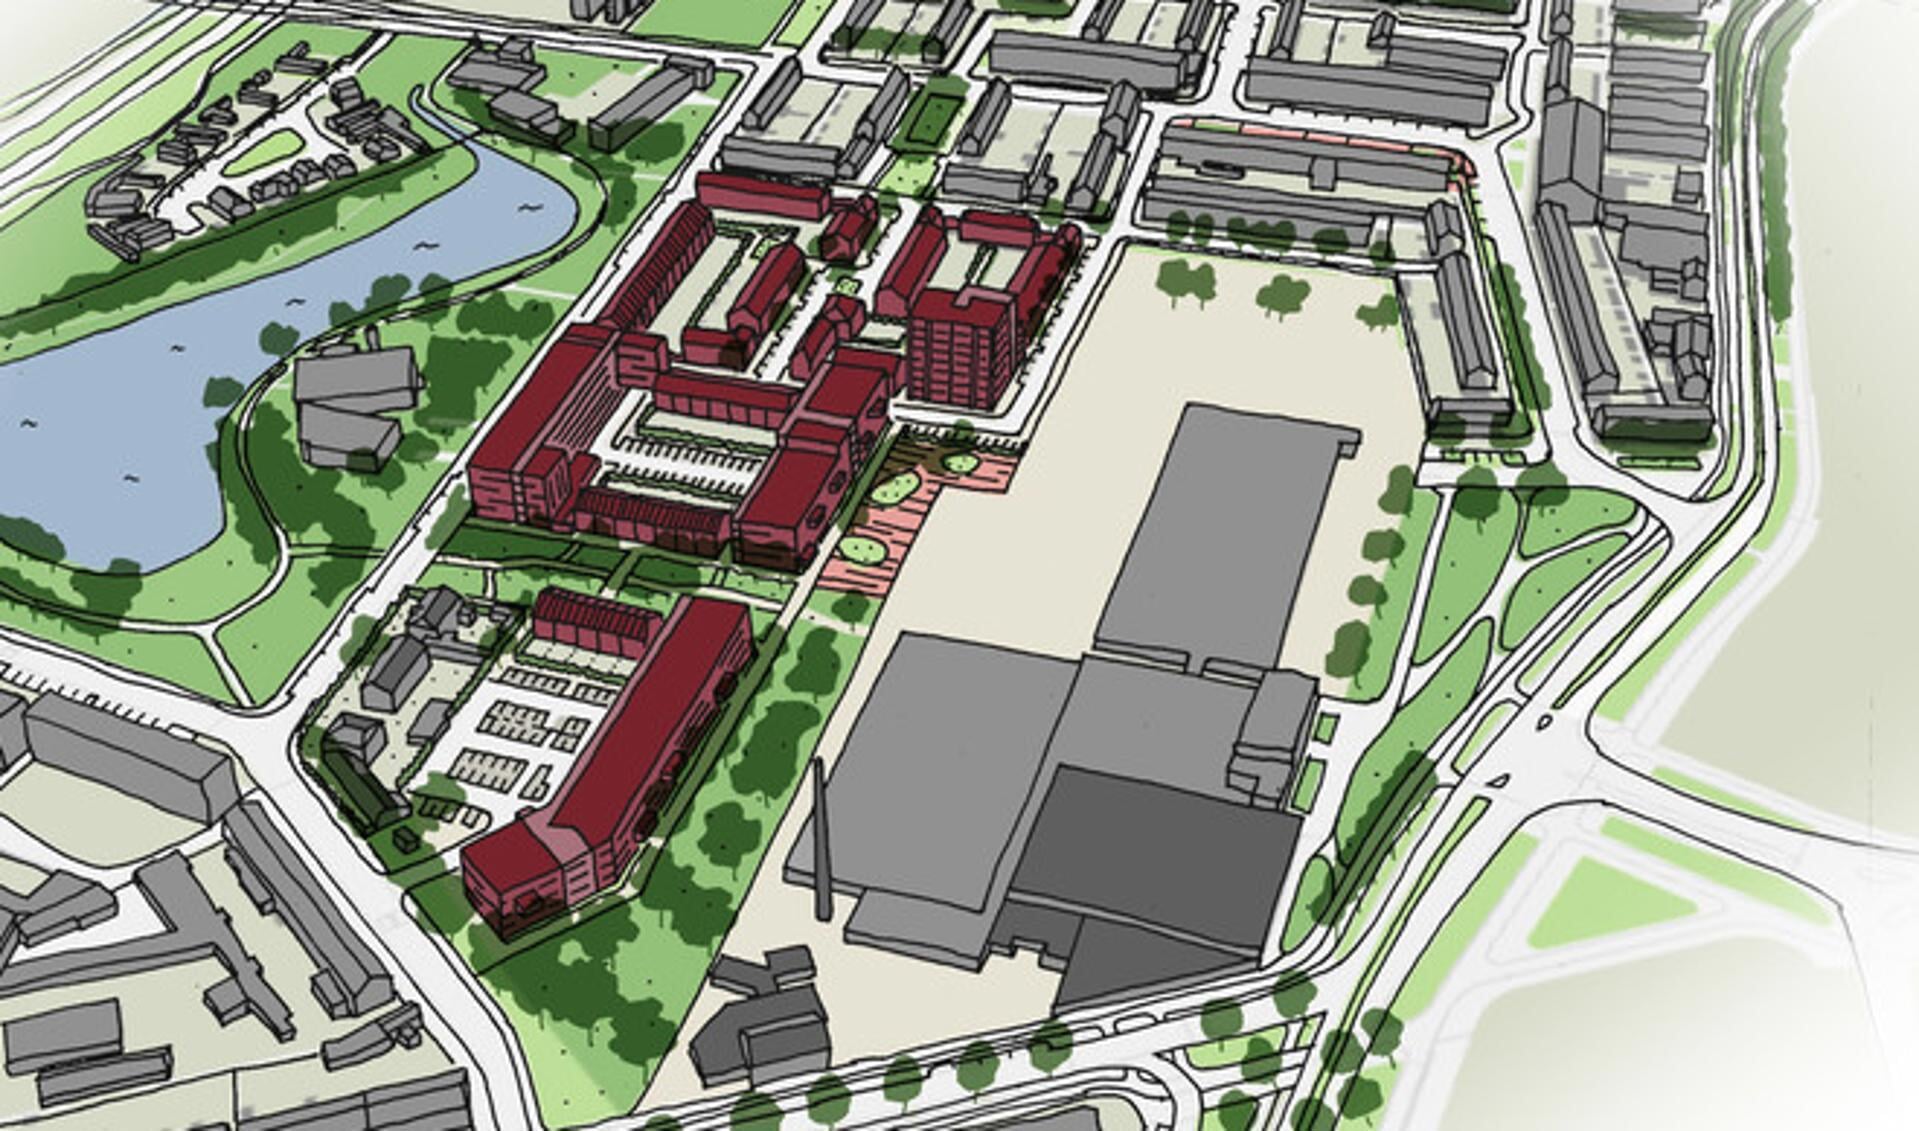 Het voorlopige ontwerp van het Eureka-woongebied. Het rode gedeelte is het nieuwe wijkje.